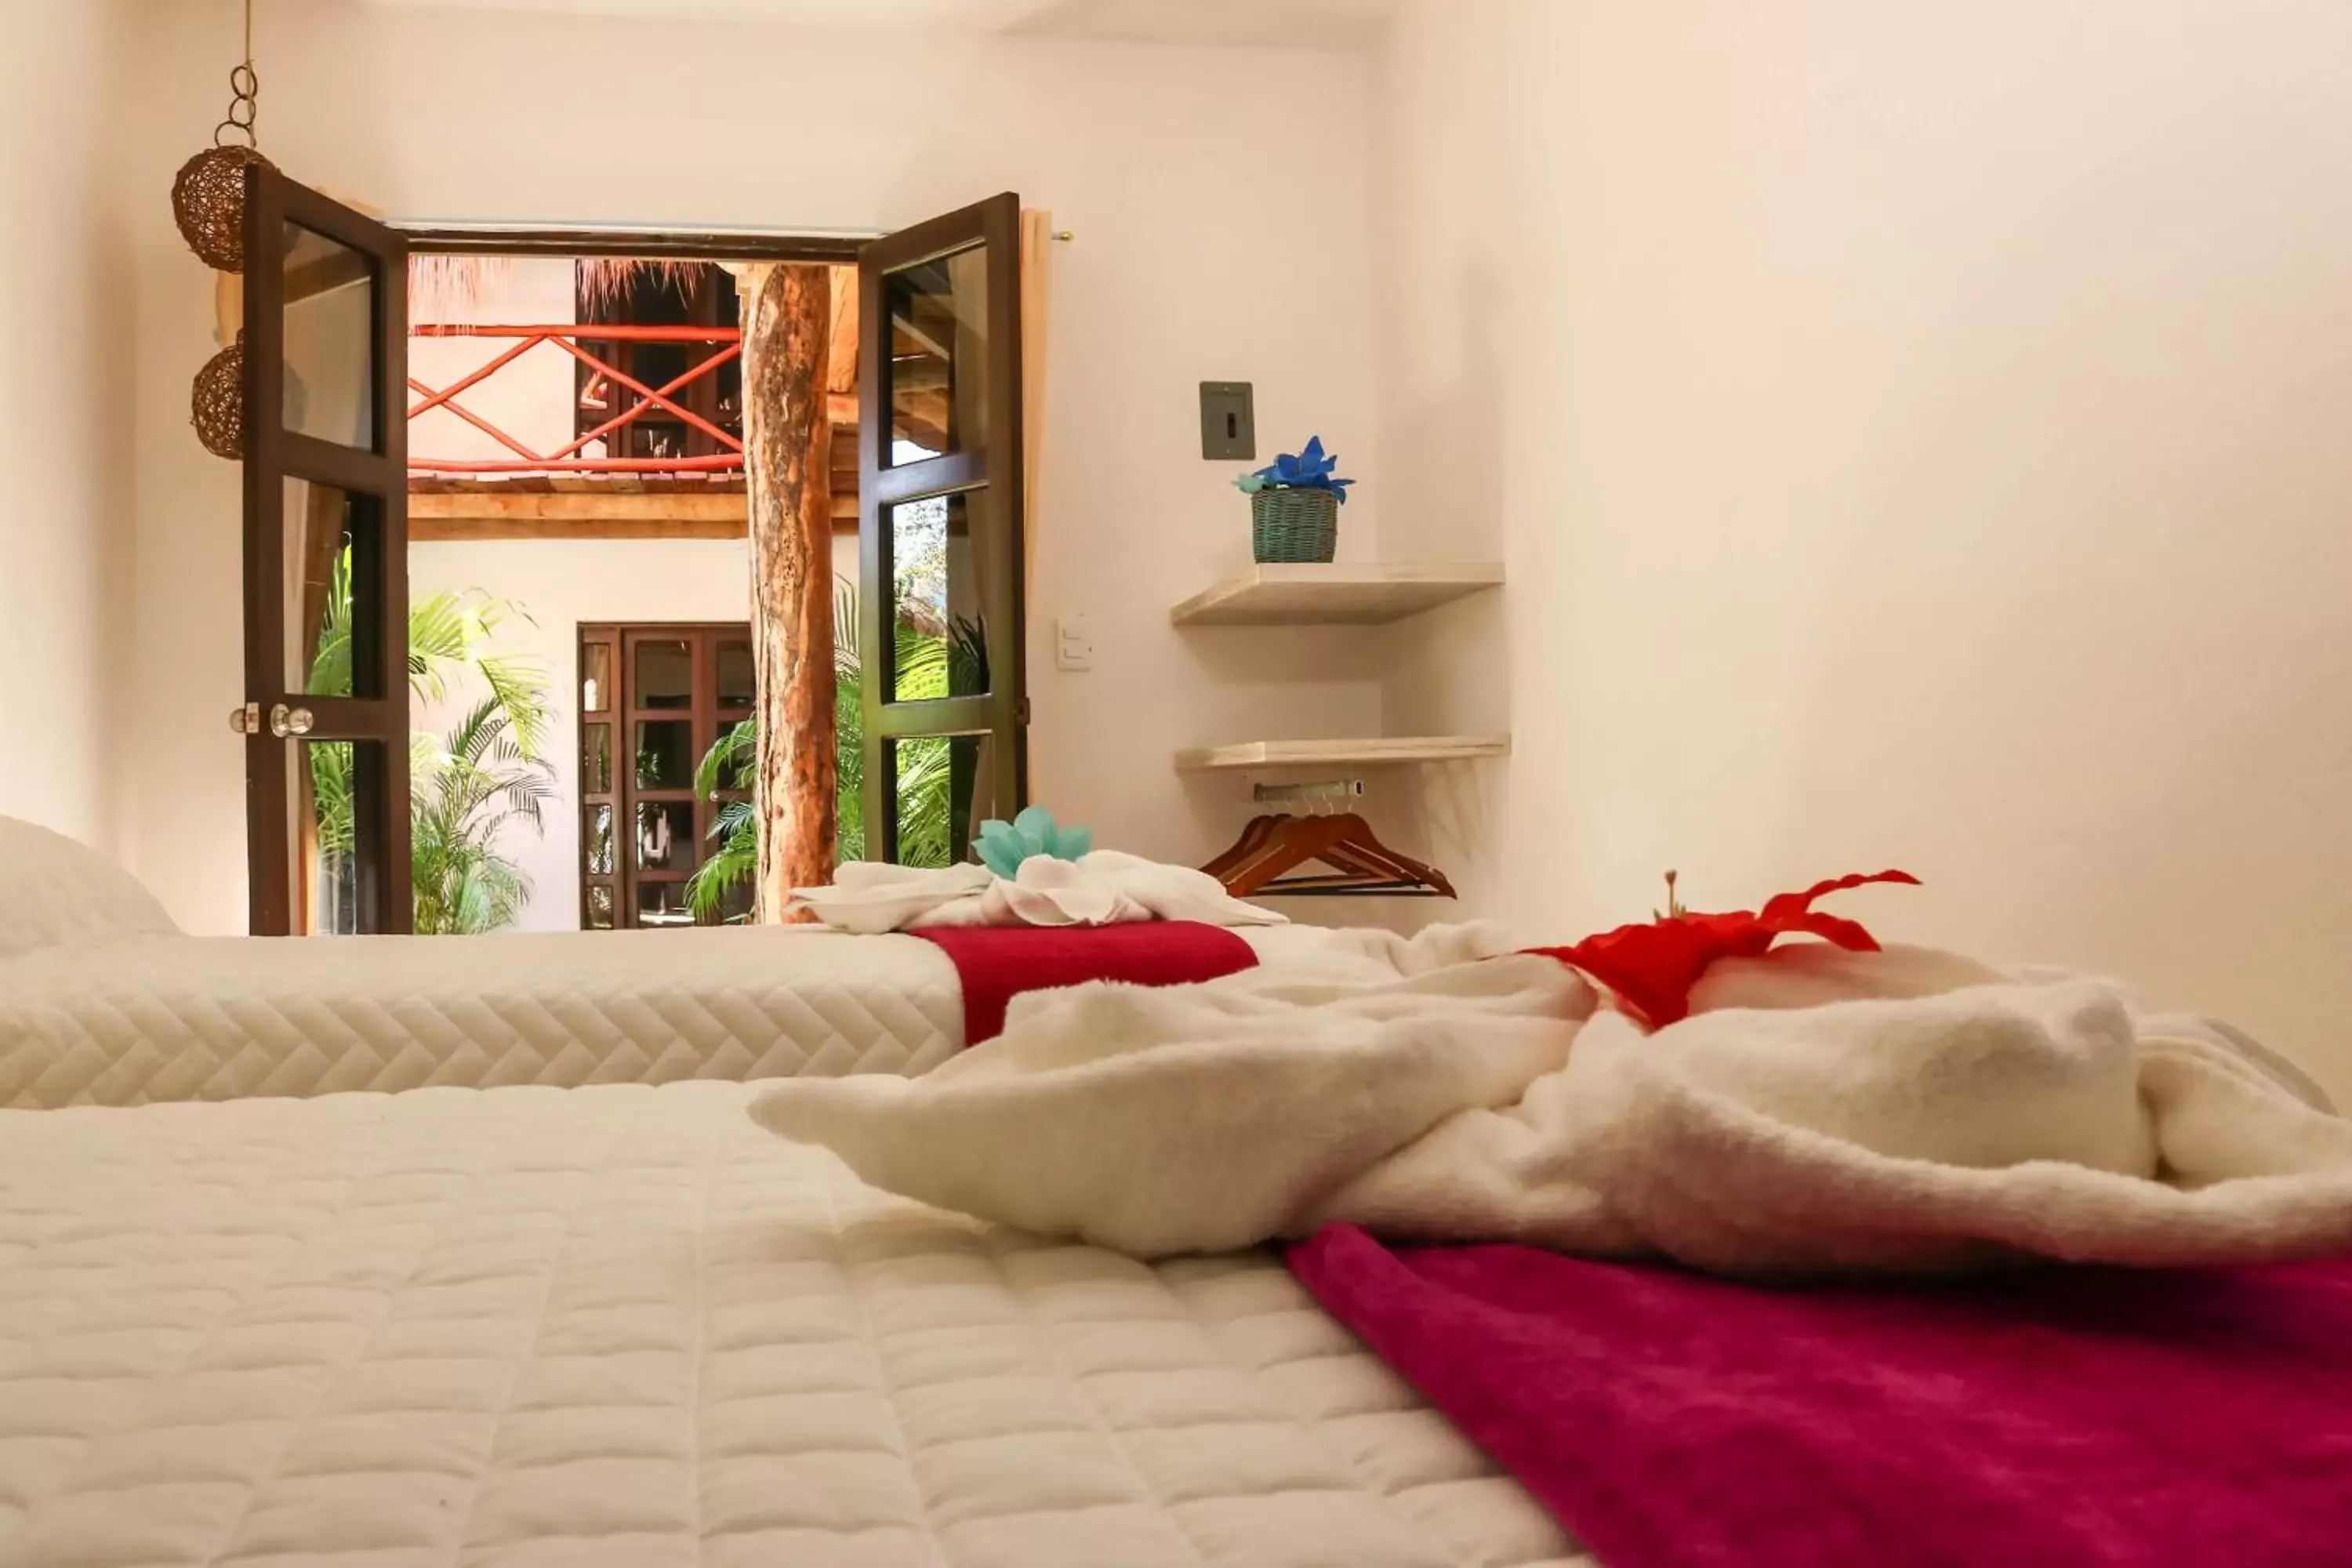 Bedroom in Kin Ha Tulum Hotel